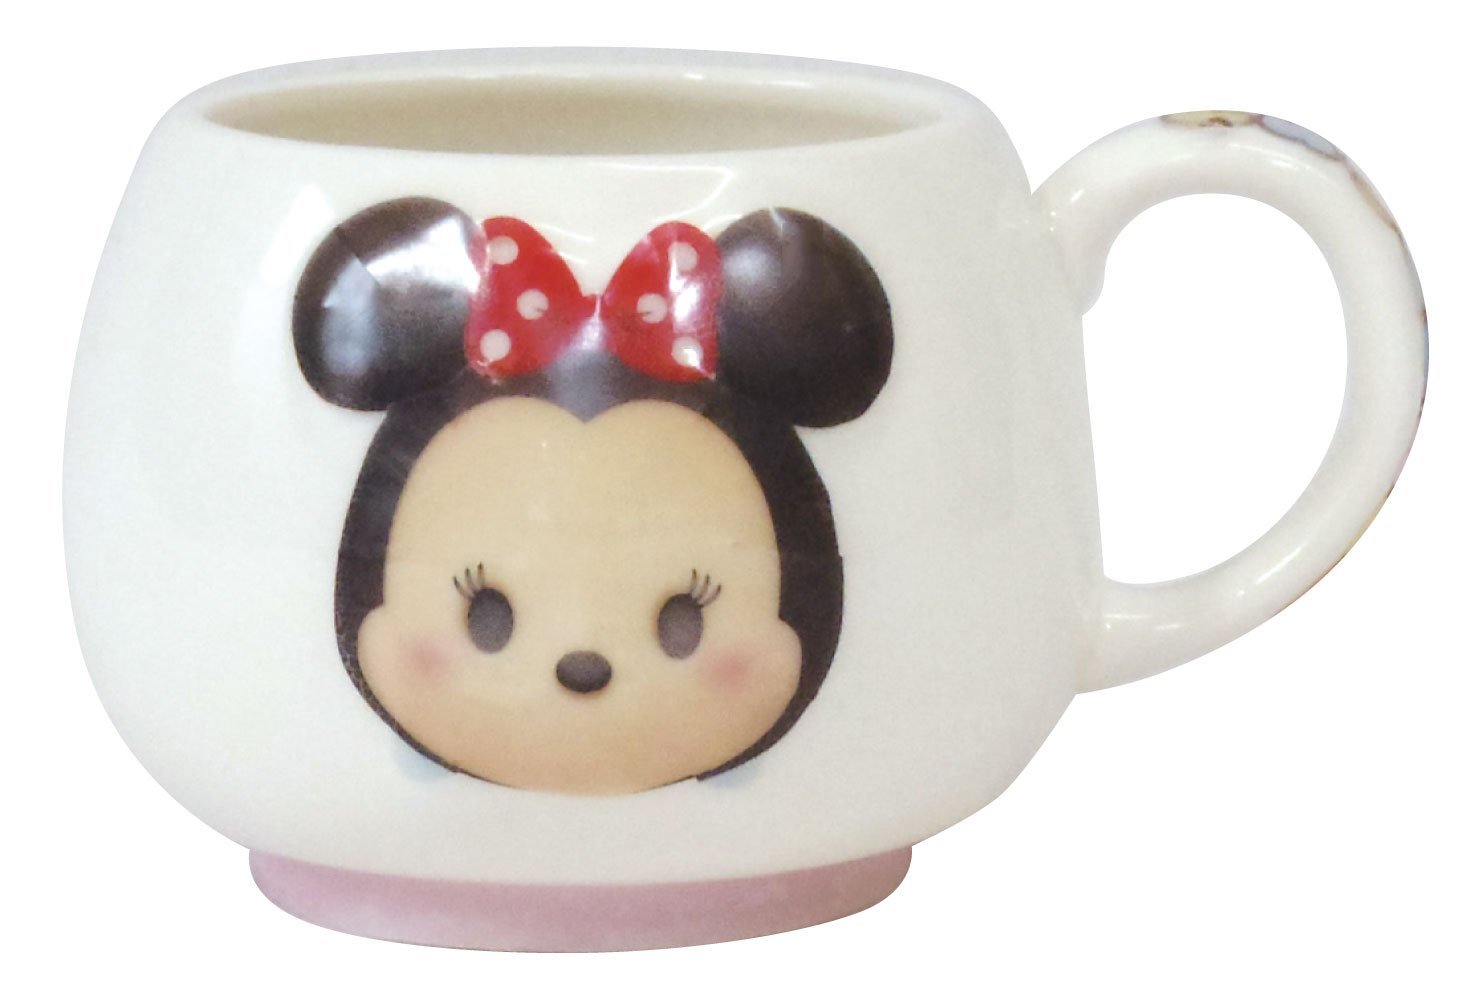 【真愛日本】15061800007 茲姆杯-立體米妮 迪士尼 米老鼠米奇 米妮 杯子 馬克杯 正品 限量 預購